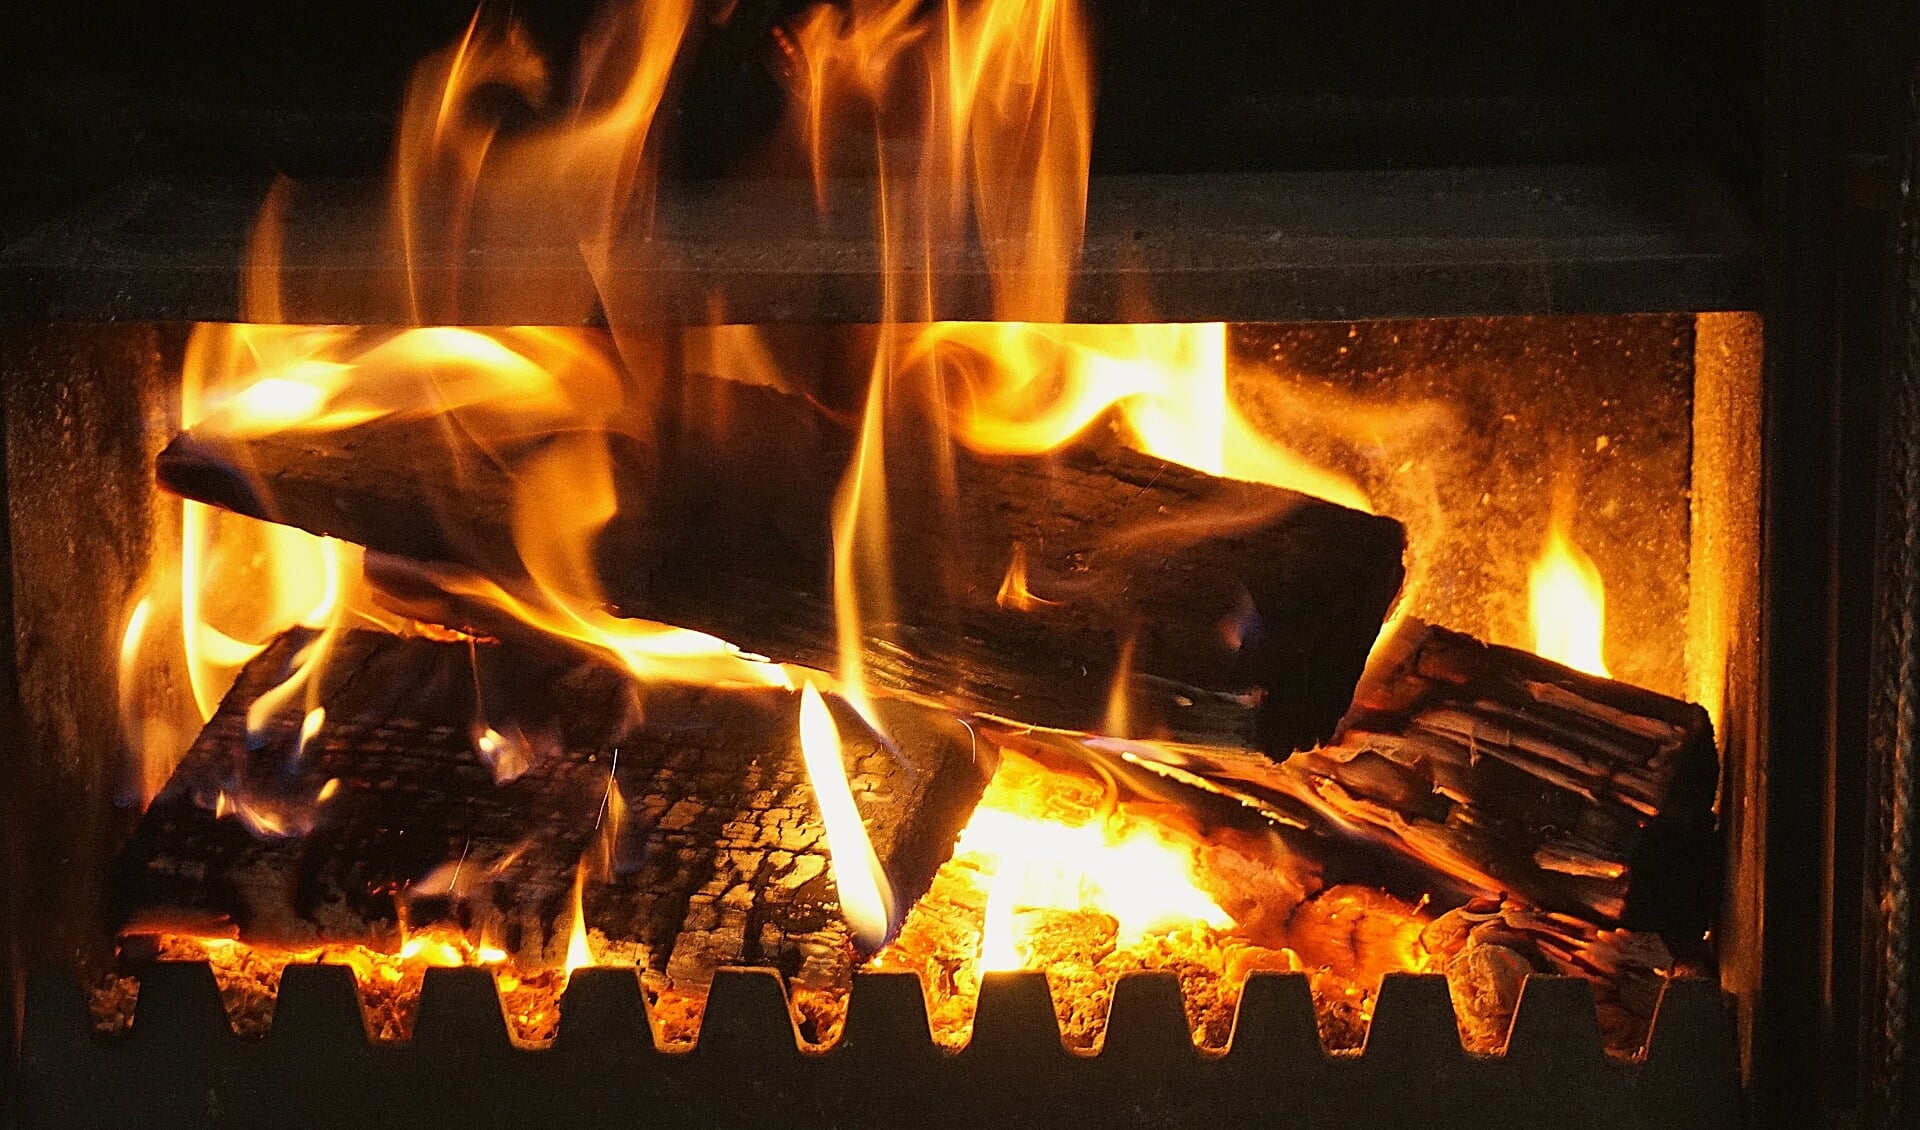 Het stoken van hout in vuurkorven en tuinkachels geeft niet alleen overlast, het is ook schadelijk voor de gezondheid.